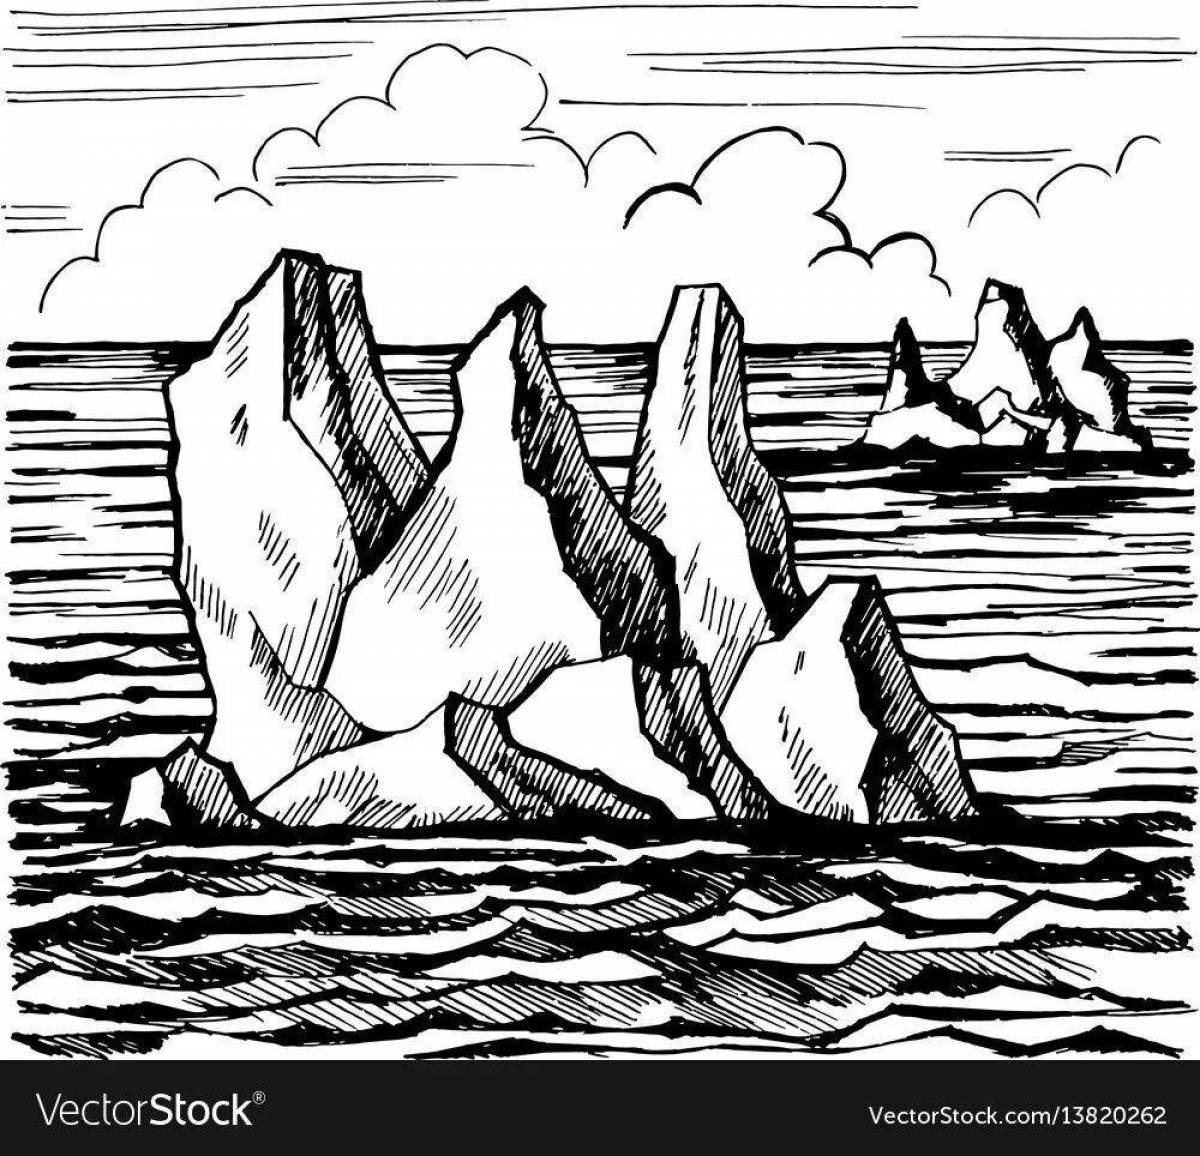 Iceberg for children #8